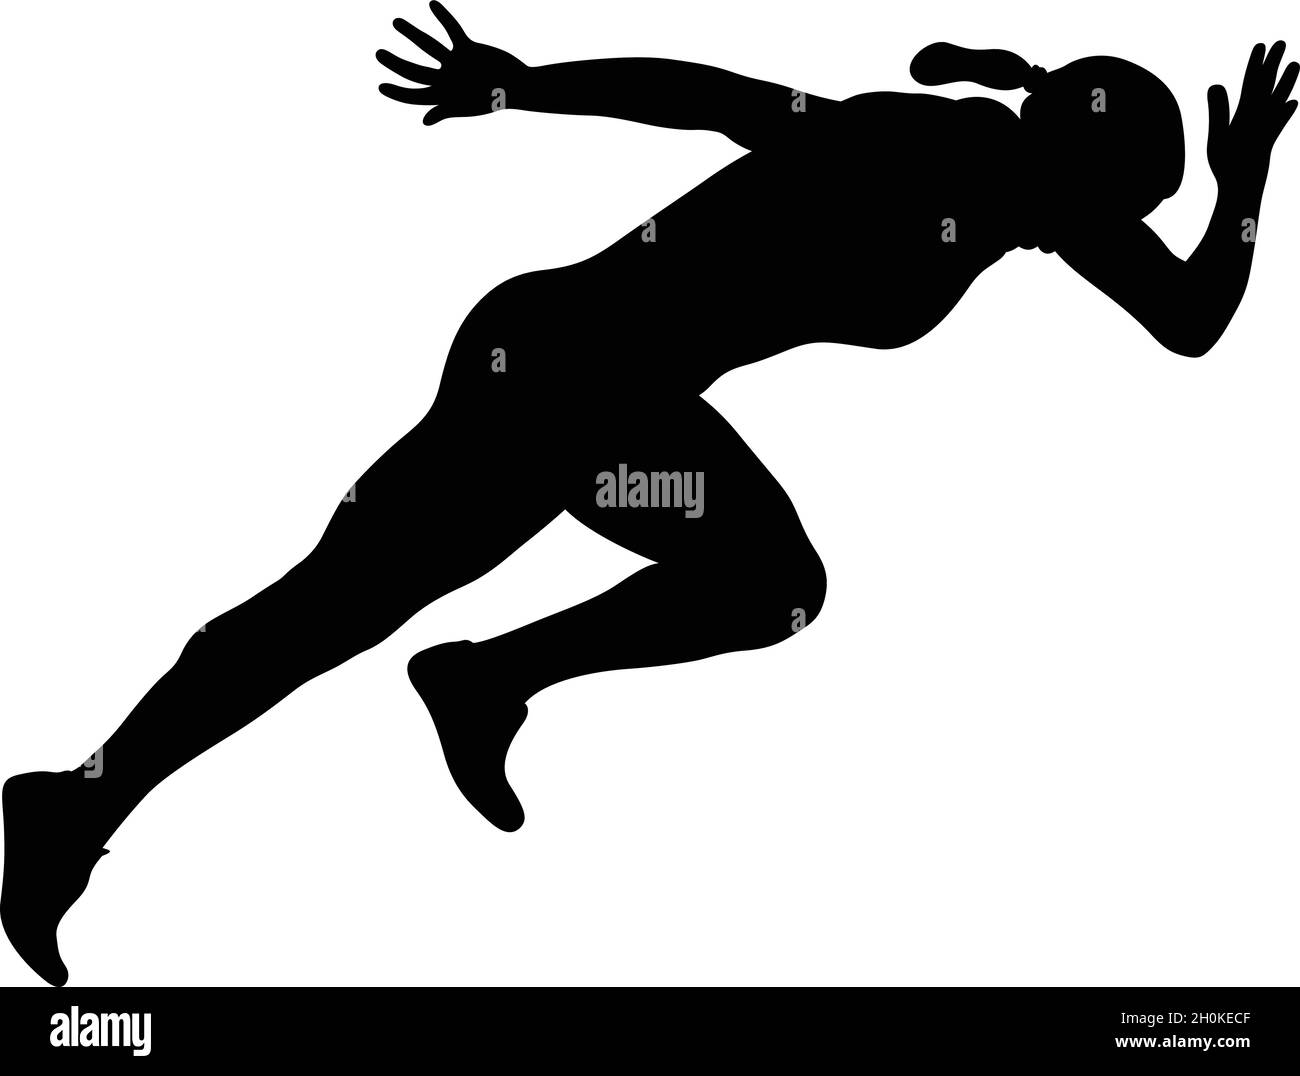 start running sprint female athlete black silhouette Stock Vector